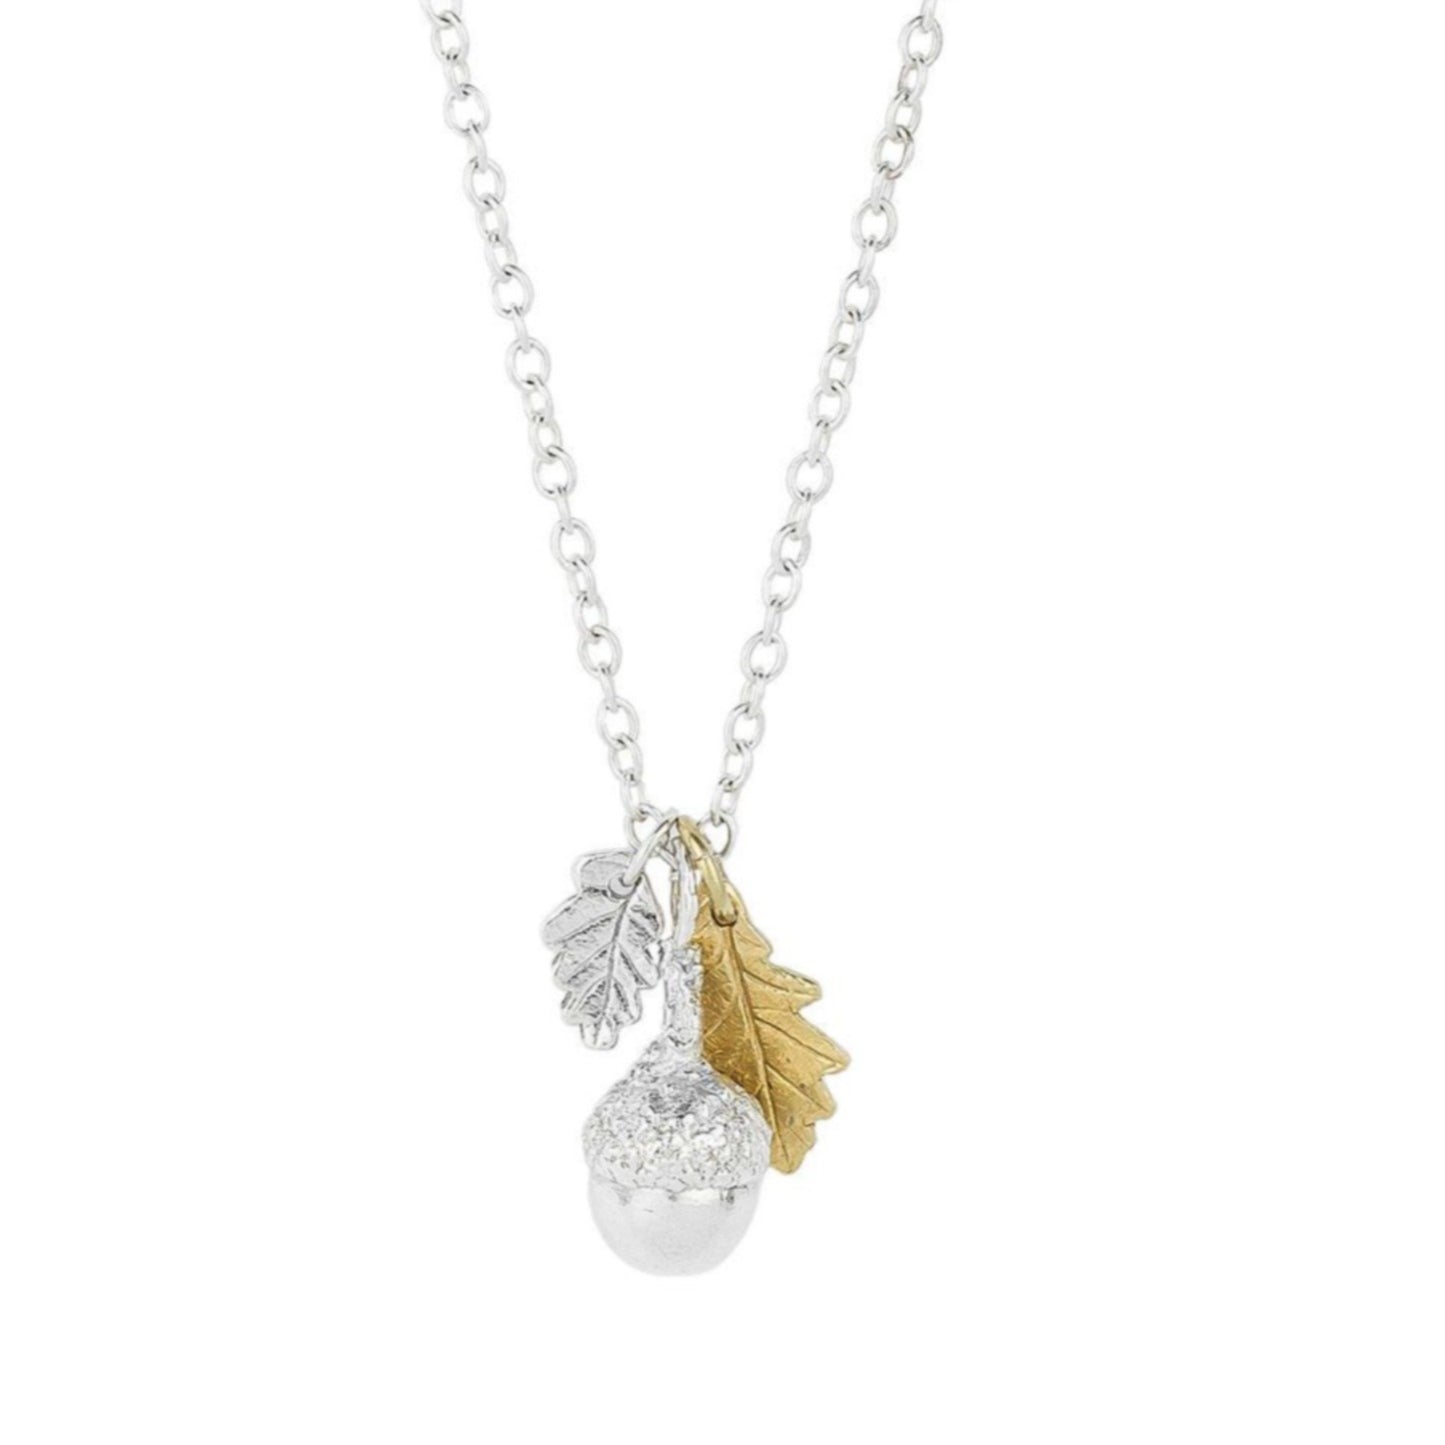 Acorn and oak leaf cluster necklace - Bethan Jarvis Fingerprint Jewellery